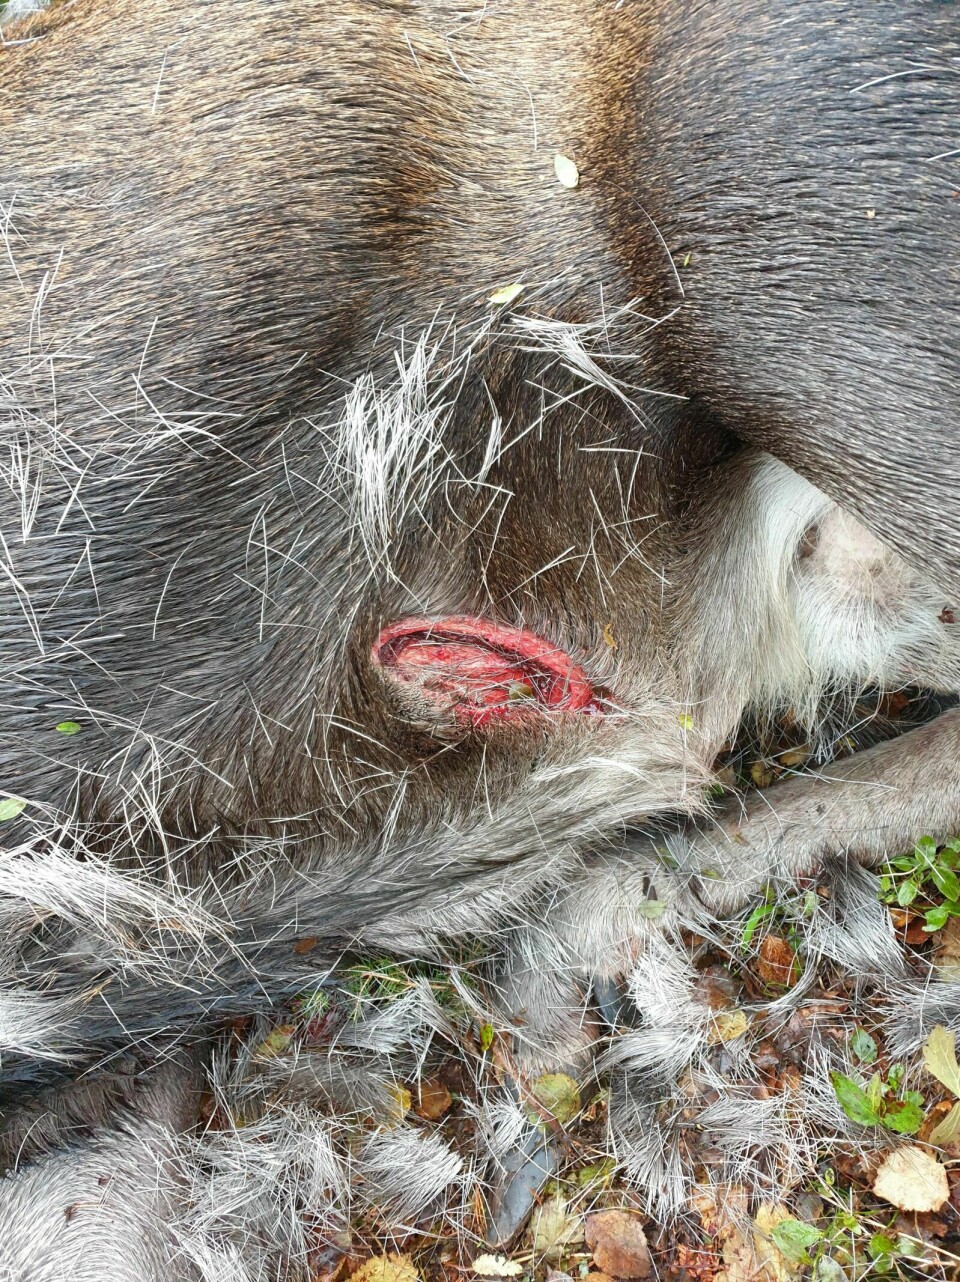 FLERE SAKER PÅ BORDET: Midt-Troms lensmannsdistrikt har flere skadeskytingssaker fra elgjakt som nå skal etterforskes. En av dem er saka i fra Bardu der et jaktlag fant dette skuddsåret i ei elgku. Foto: Bardu kommune (arkiv)